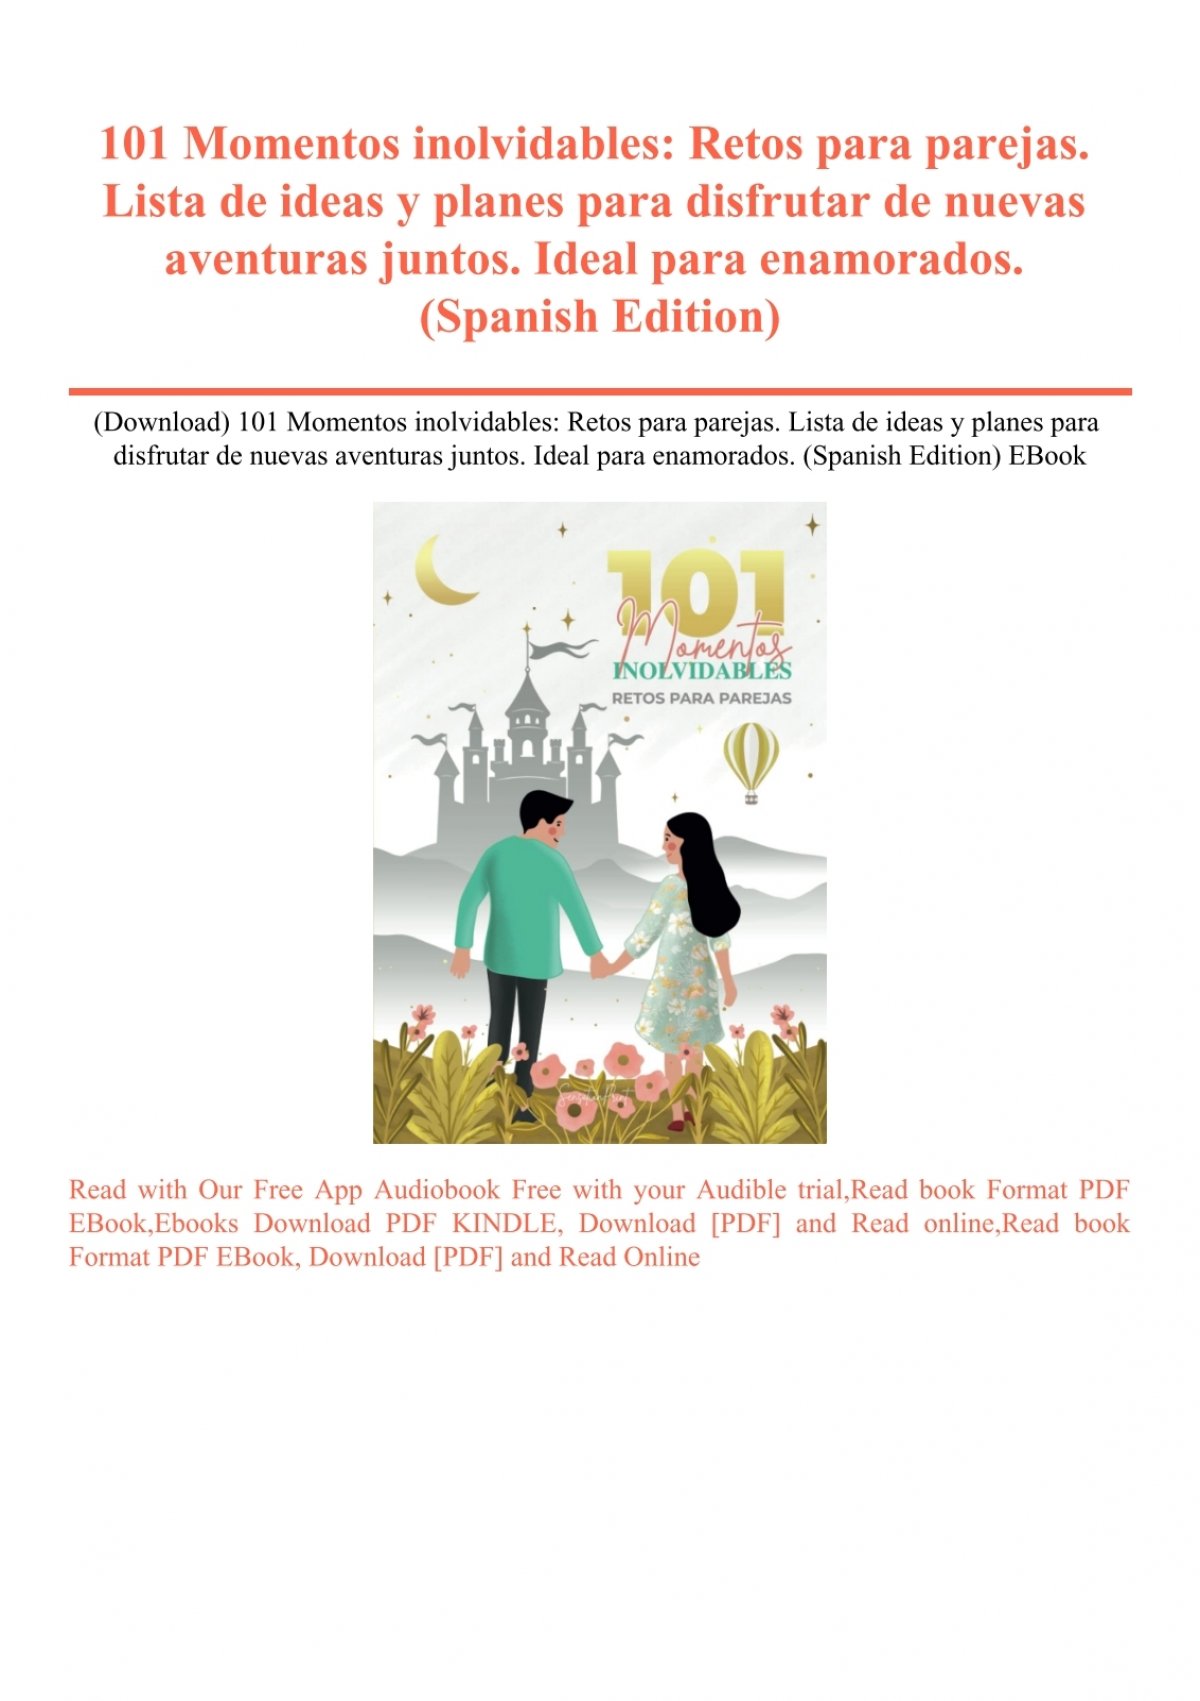 152 Momentos a tu lado: Retos para parejas (Spanish Edition